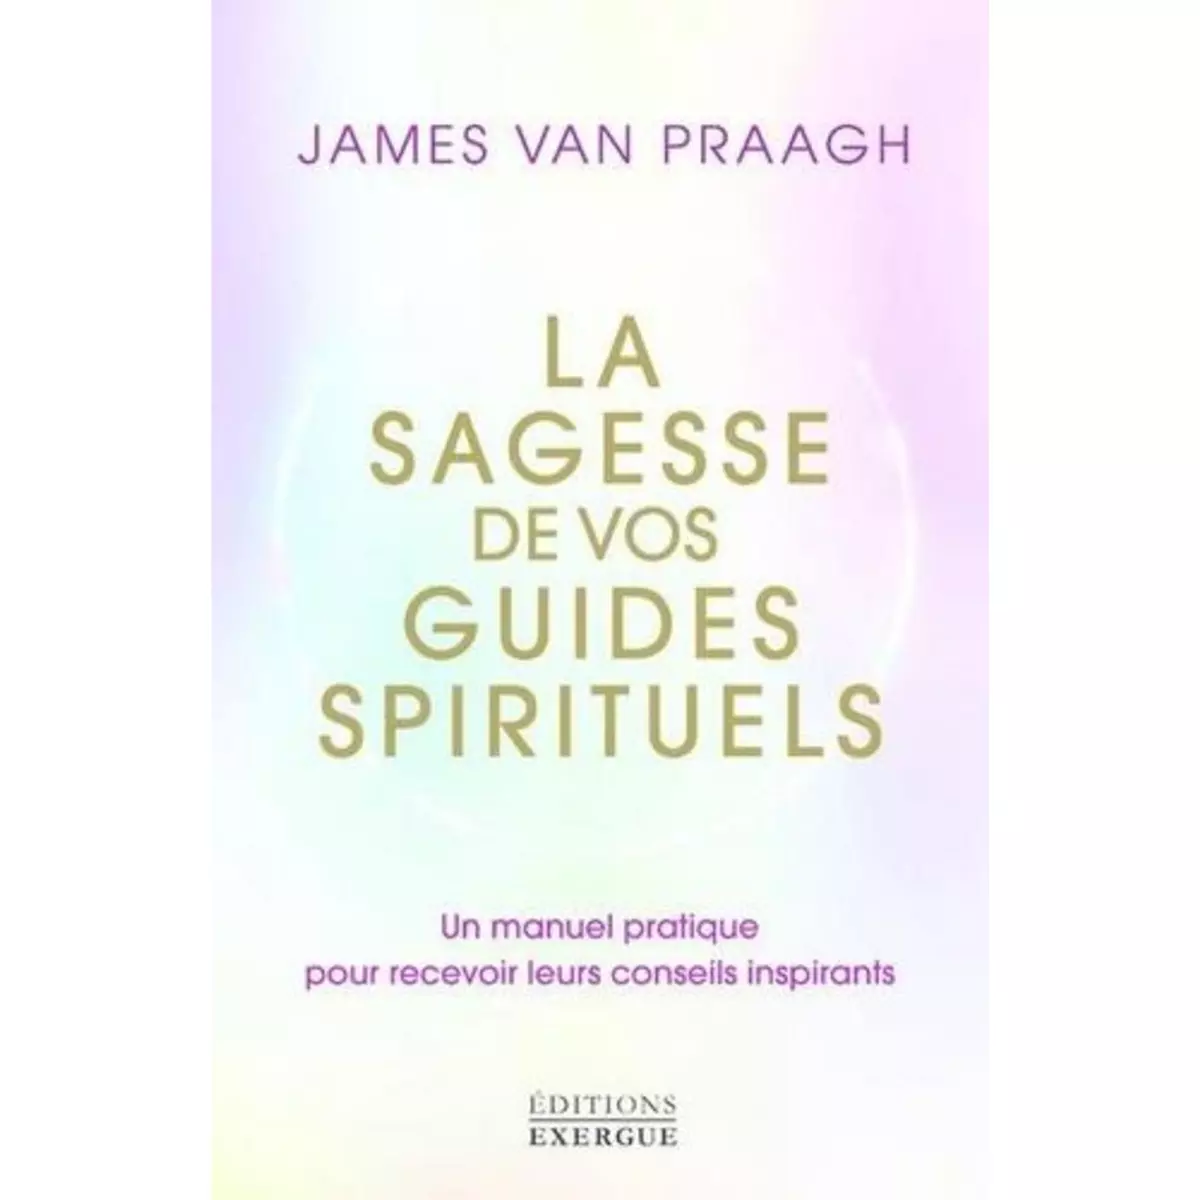  LA SAGESSE DE VOS GUIDES SPIRITUELS. UN MANUEL PRATIQUE POUR RECEVOIR LEURS CONSEILS INSPIRANTS, Van Praagh James